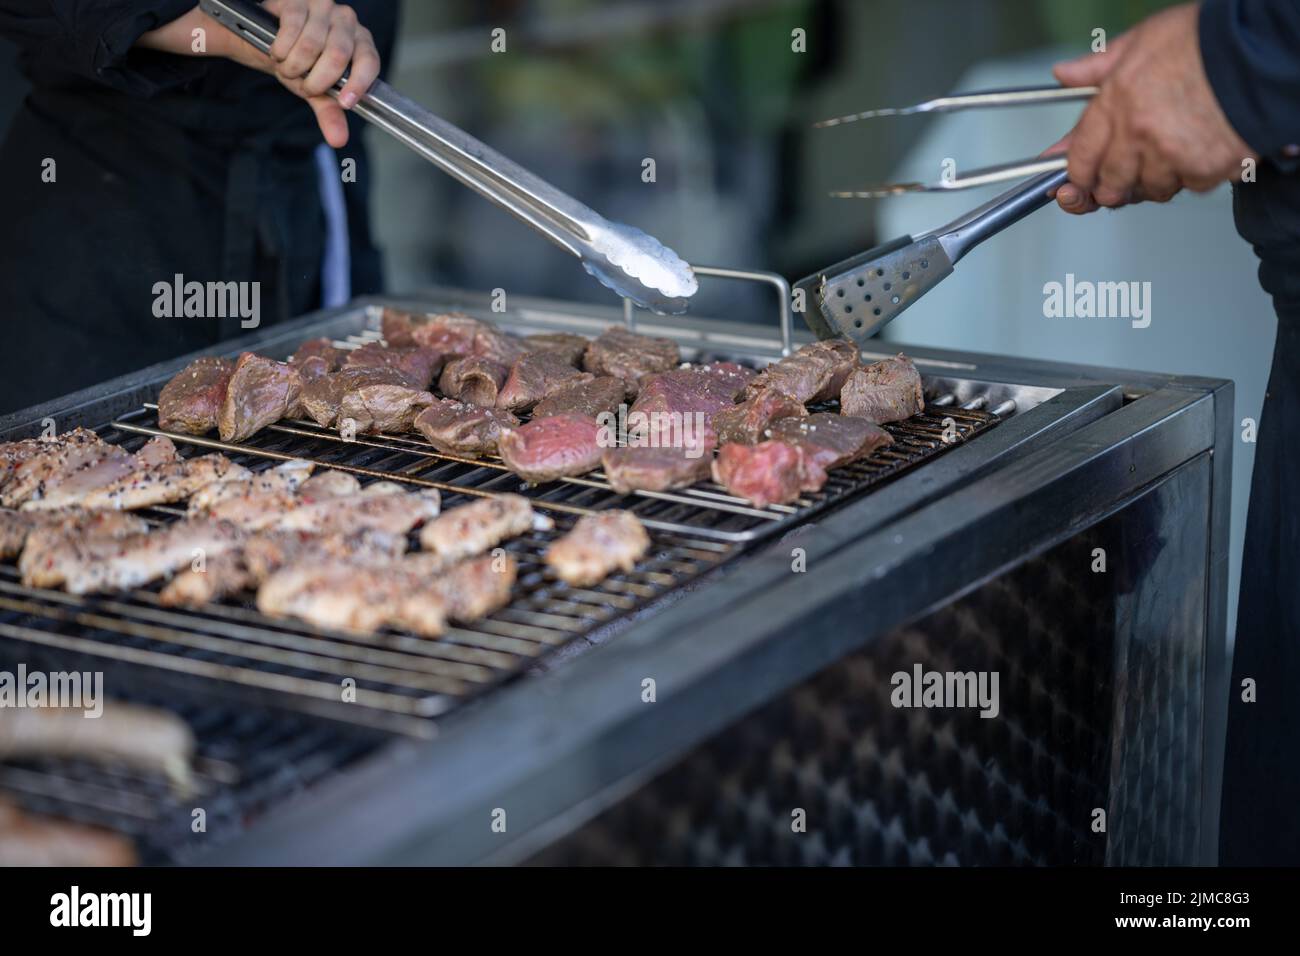 Food, Deutschland, Rheinland-Pfalz, July 30. Rohes Fleisch liegt auf einem Grill und wird mit Grillzangen gewendet. Stock Photo